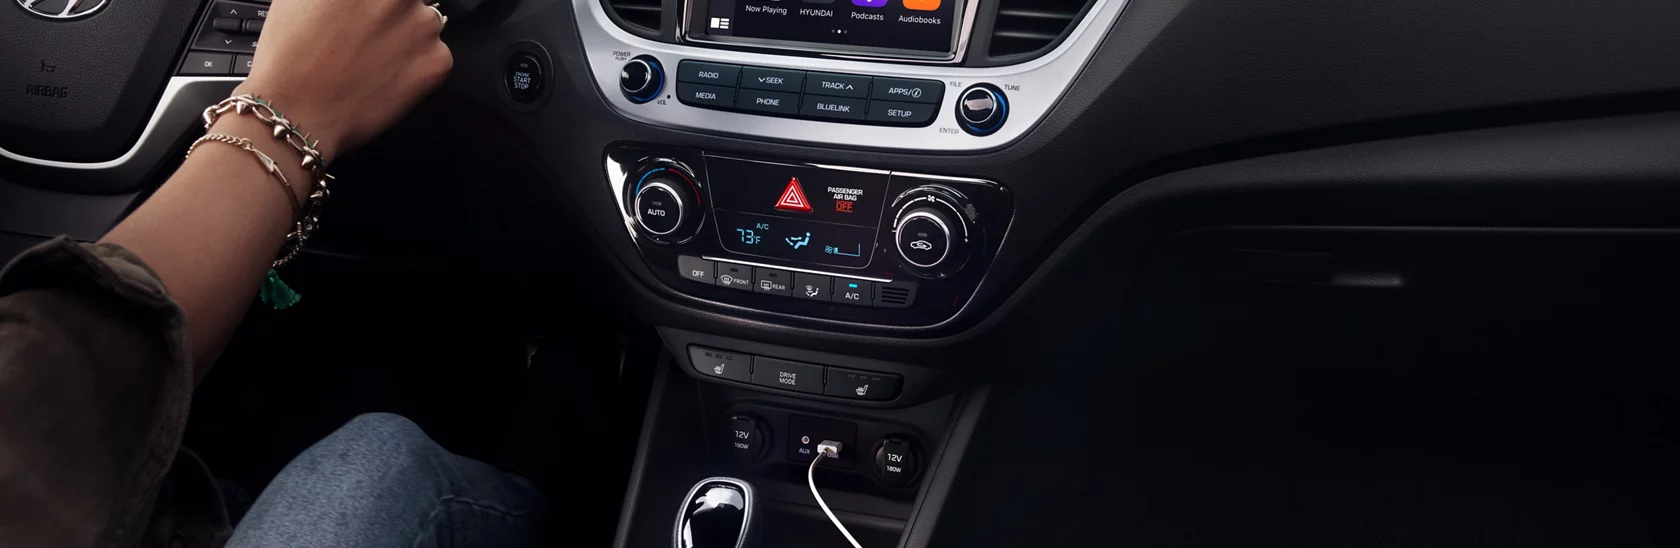 Android Auto y Apple CarPlay del Hyundai Accent 2021